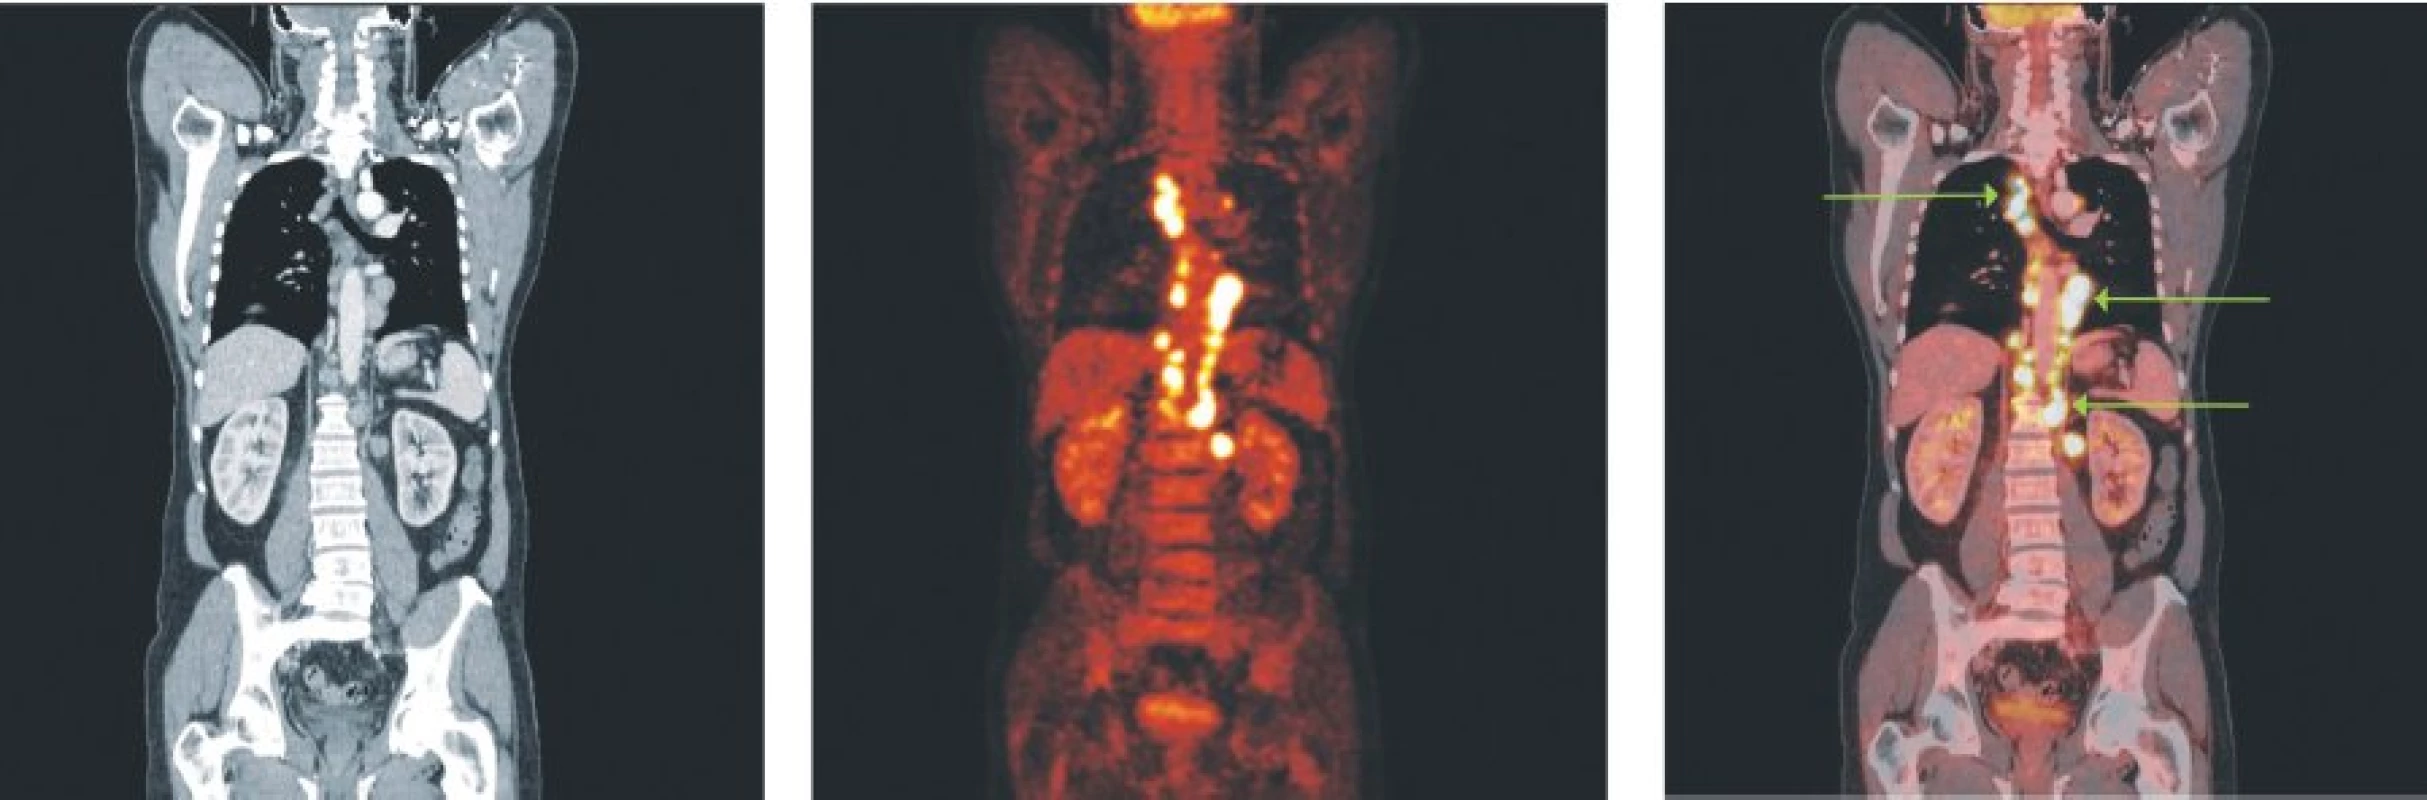 Snímky výpočetní tomografie (CT), pozitronové emisní tomografie (PET) a PET/CT u nemocného s difuzním B-velkobuněčným lymfomem a postižením lymfatických uzlin ve všech oddílech mediastina, perikardiálně a v okolí břišní aorty.